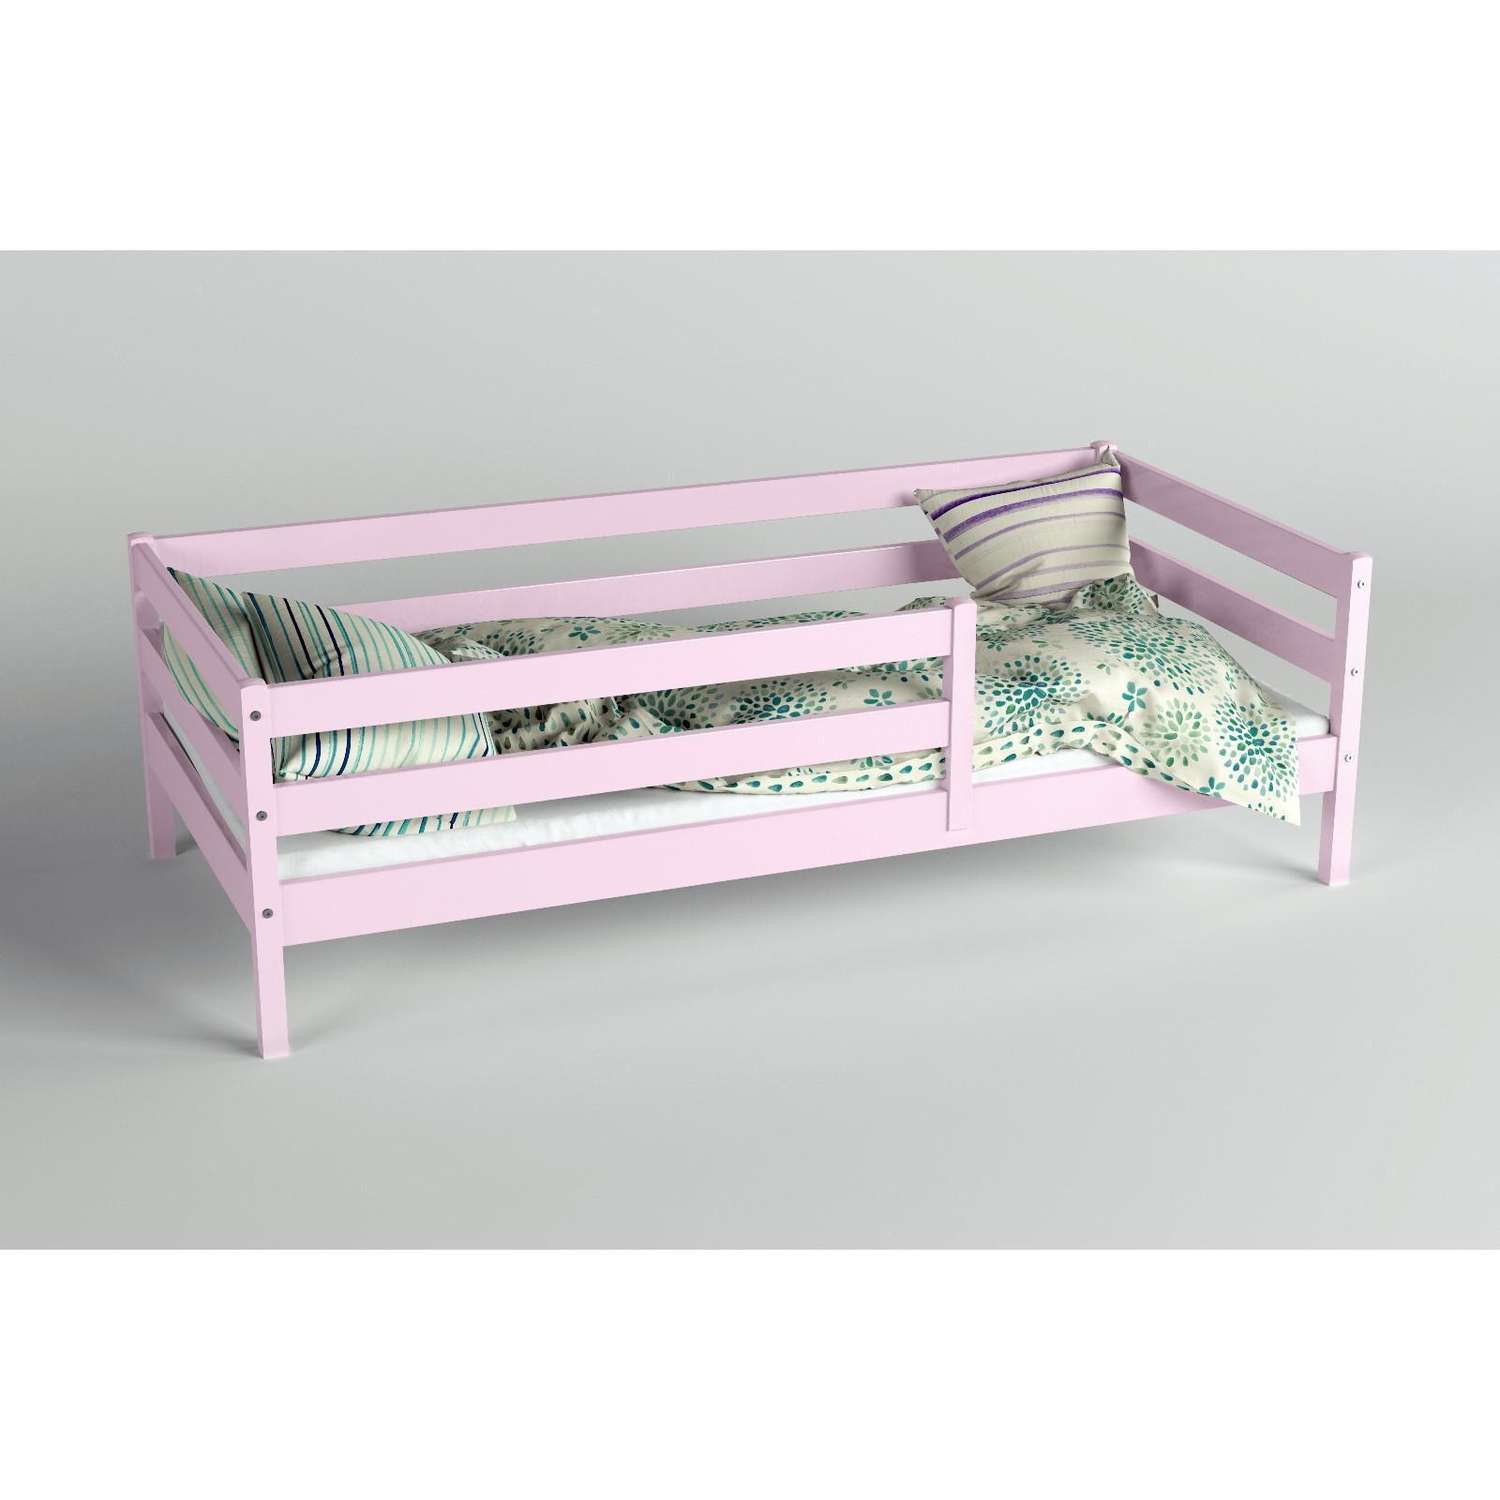 Кровать Клик Мебель Сева спальное место 1400х800 цвет Розовый пастельный Массив Берёзы - фото 2